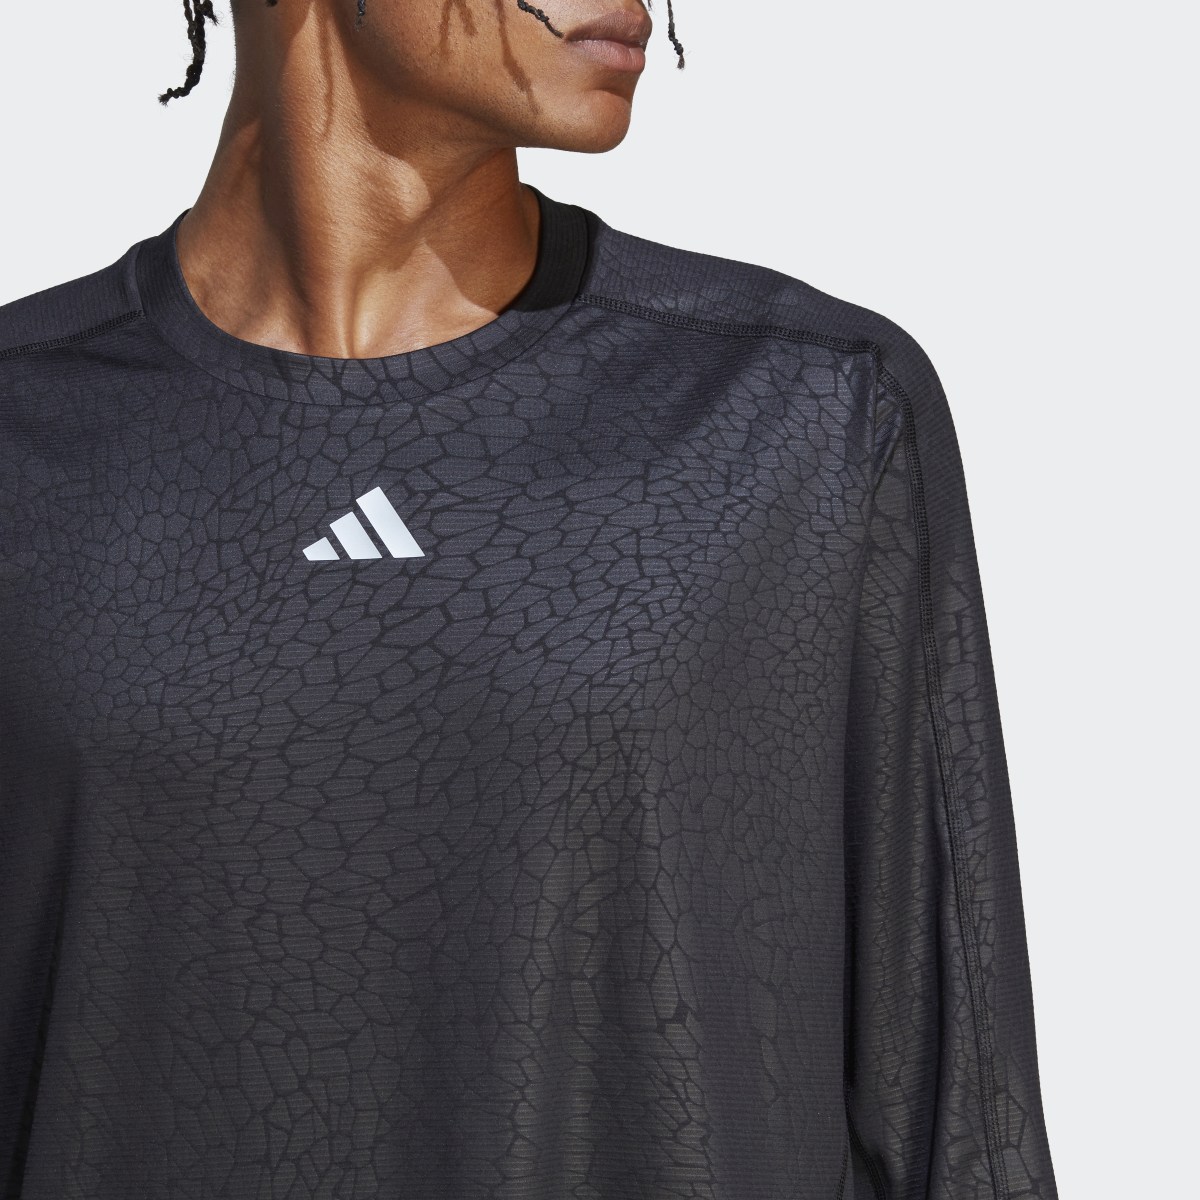 Adidas Workout PU Print Long-Sleeve Top. 6